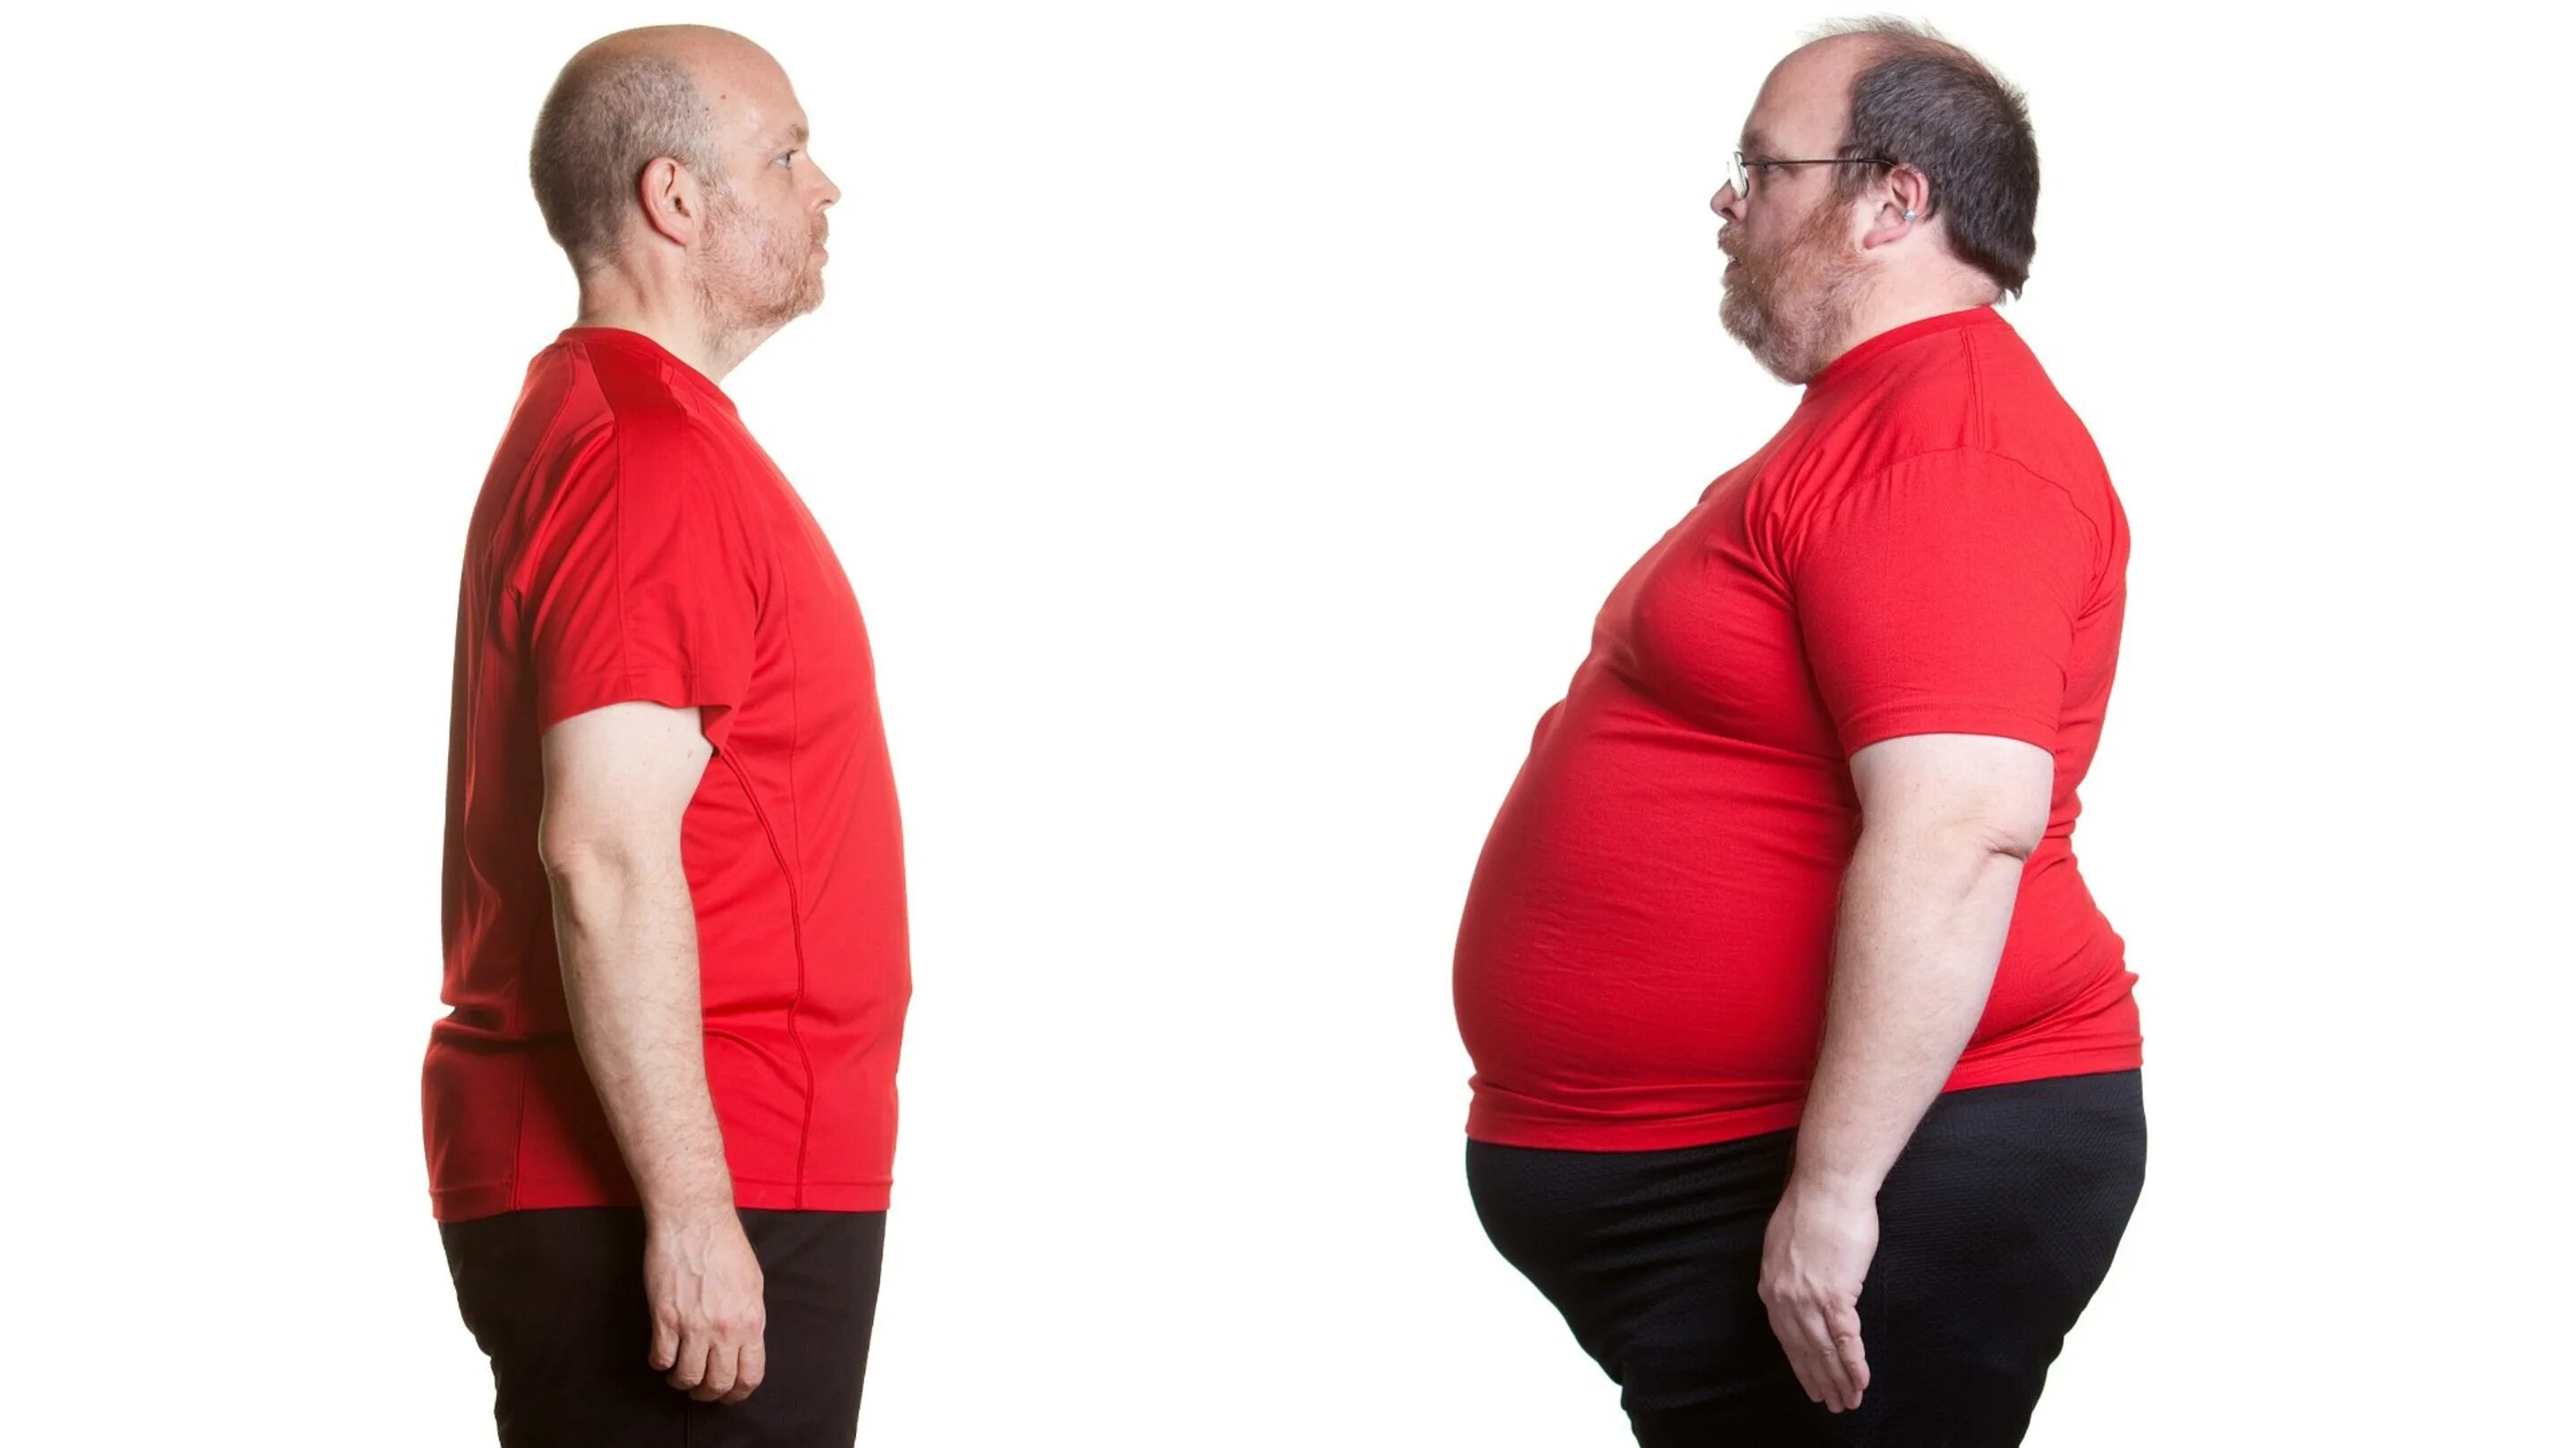 Вдвое толще. Толстый и худой. Толстый и худой человек. Люди с избыточным весом.